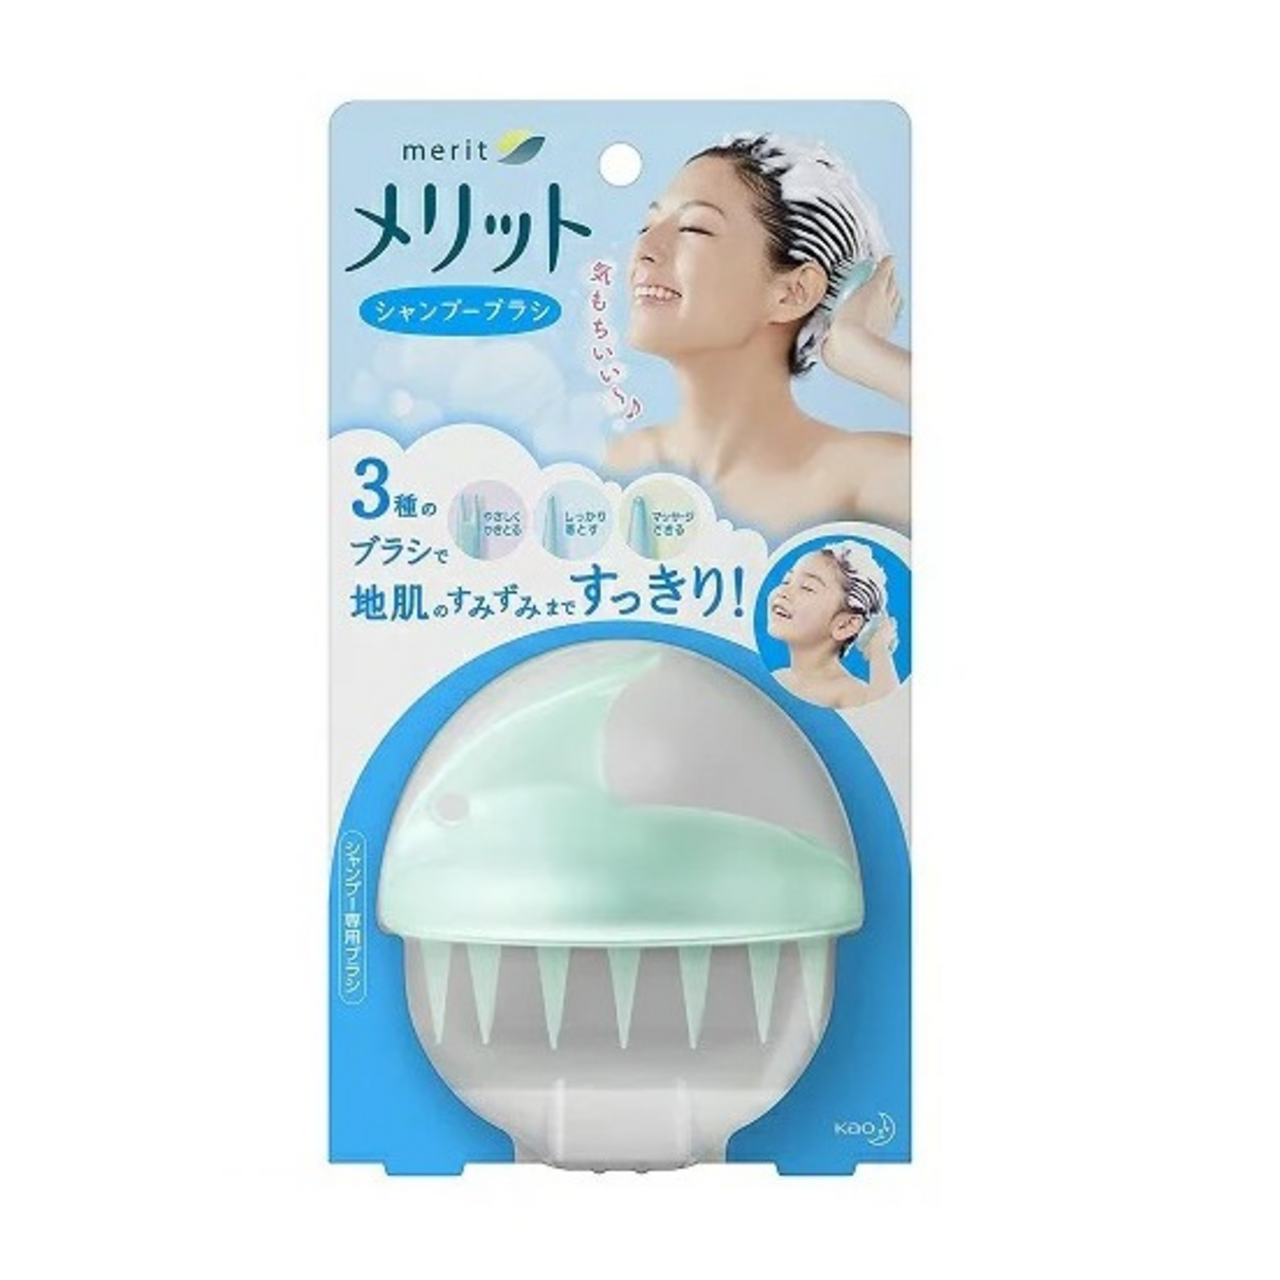 Щетка для волос для мытья головы. Kao Merit Shampoo Brush. Японская щетка для мытья волос. Массажер для мытья головы. Массажная щетка для мытья головы.